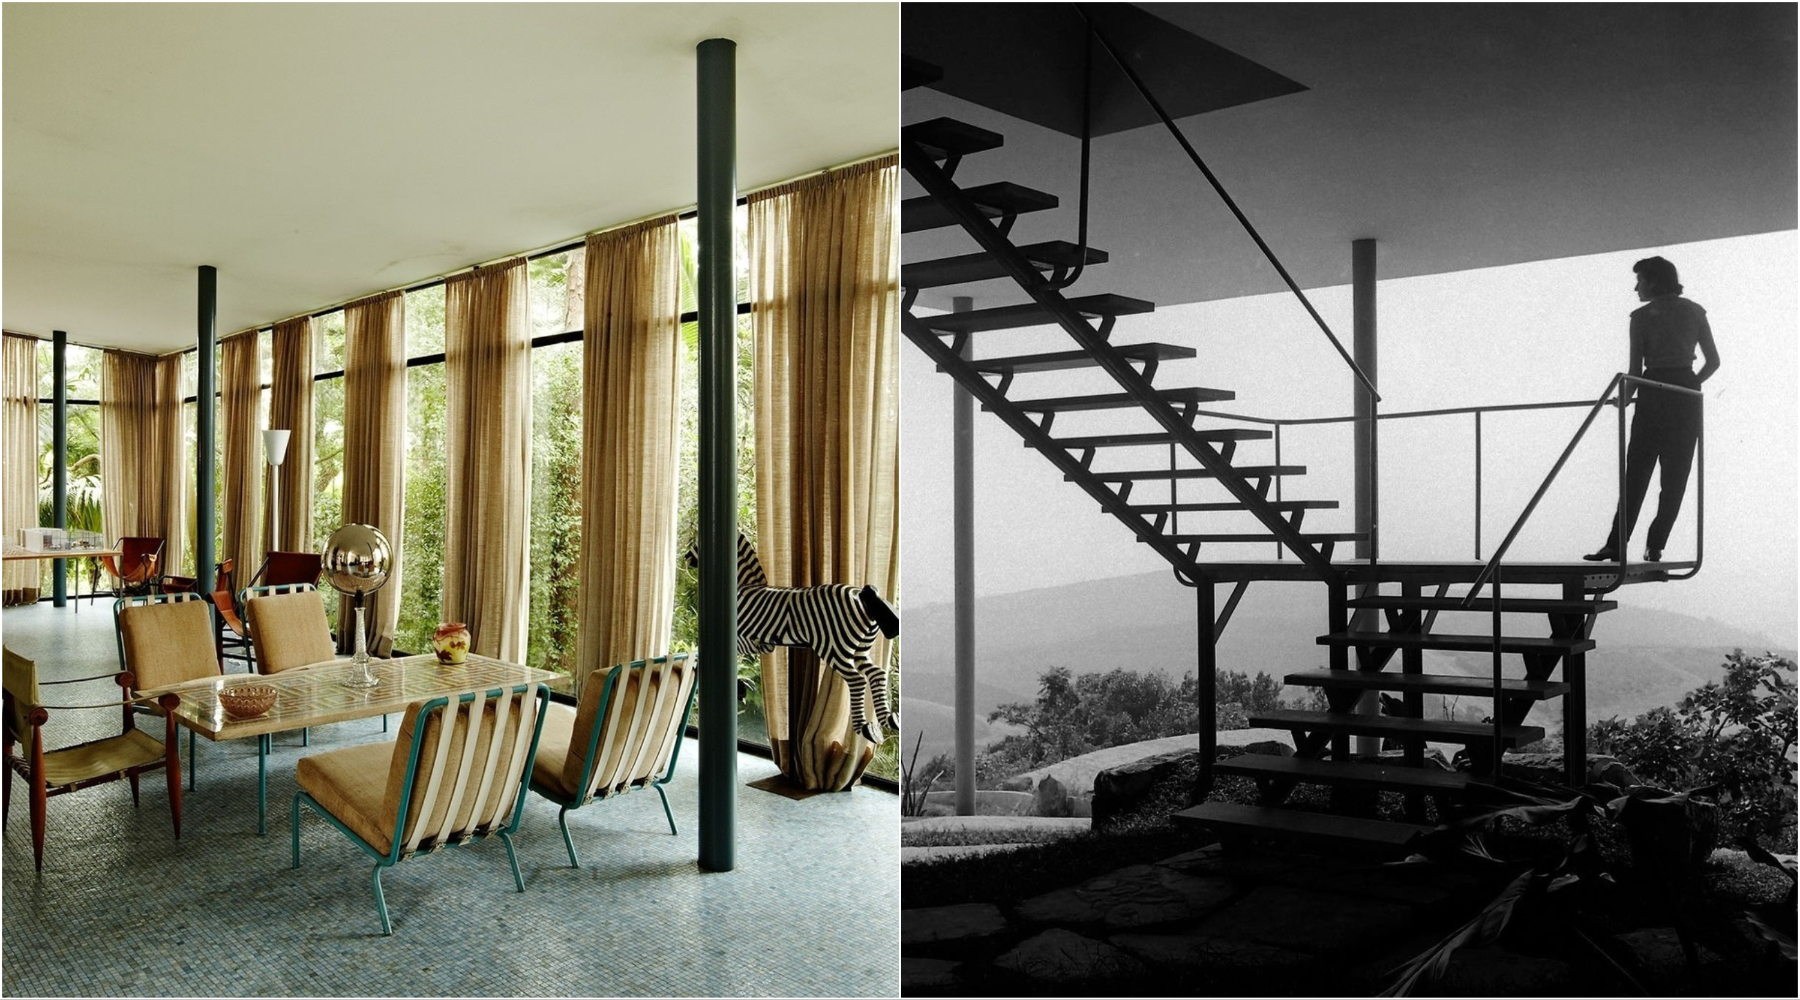 Casa de Vidro: Modernistički dom Line Bo Bardi smešten u šumama Sao Paola